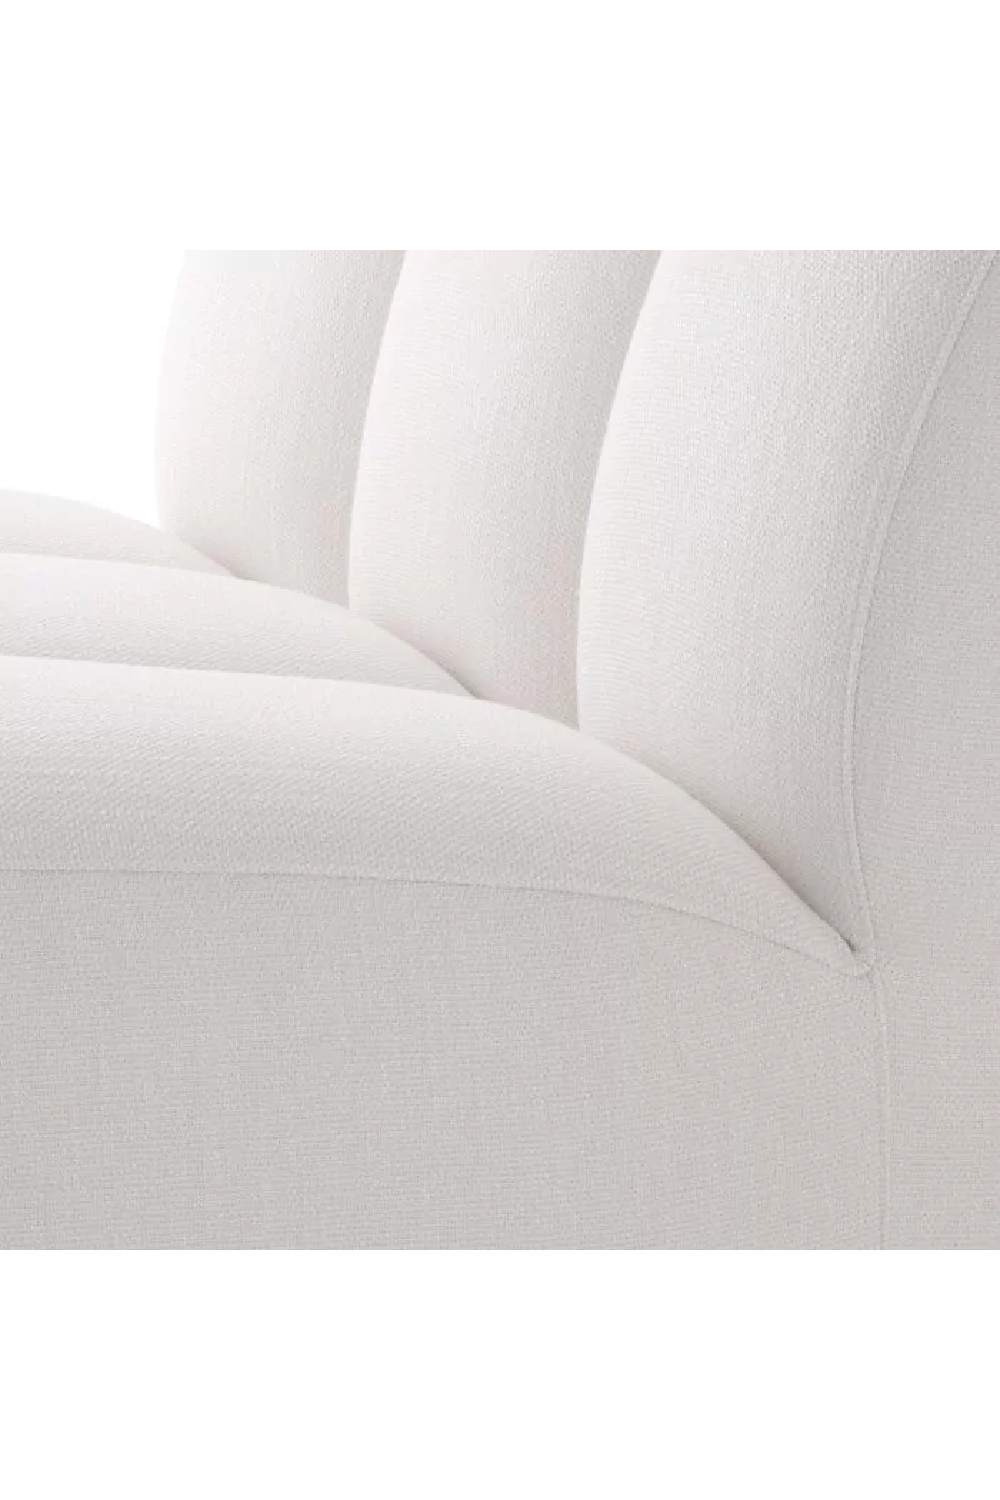 Channel Stitched Modern Sofa | Eichholtz Lando | Oroa.com